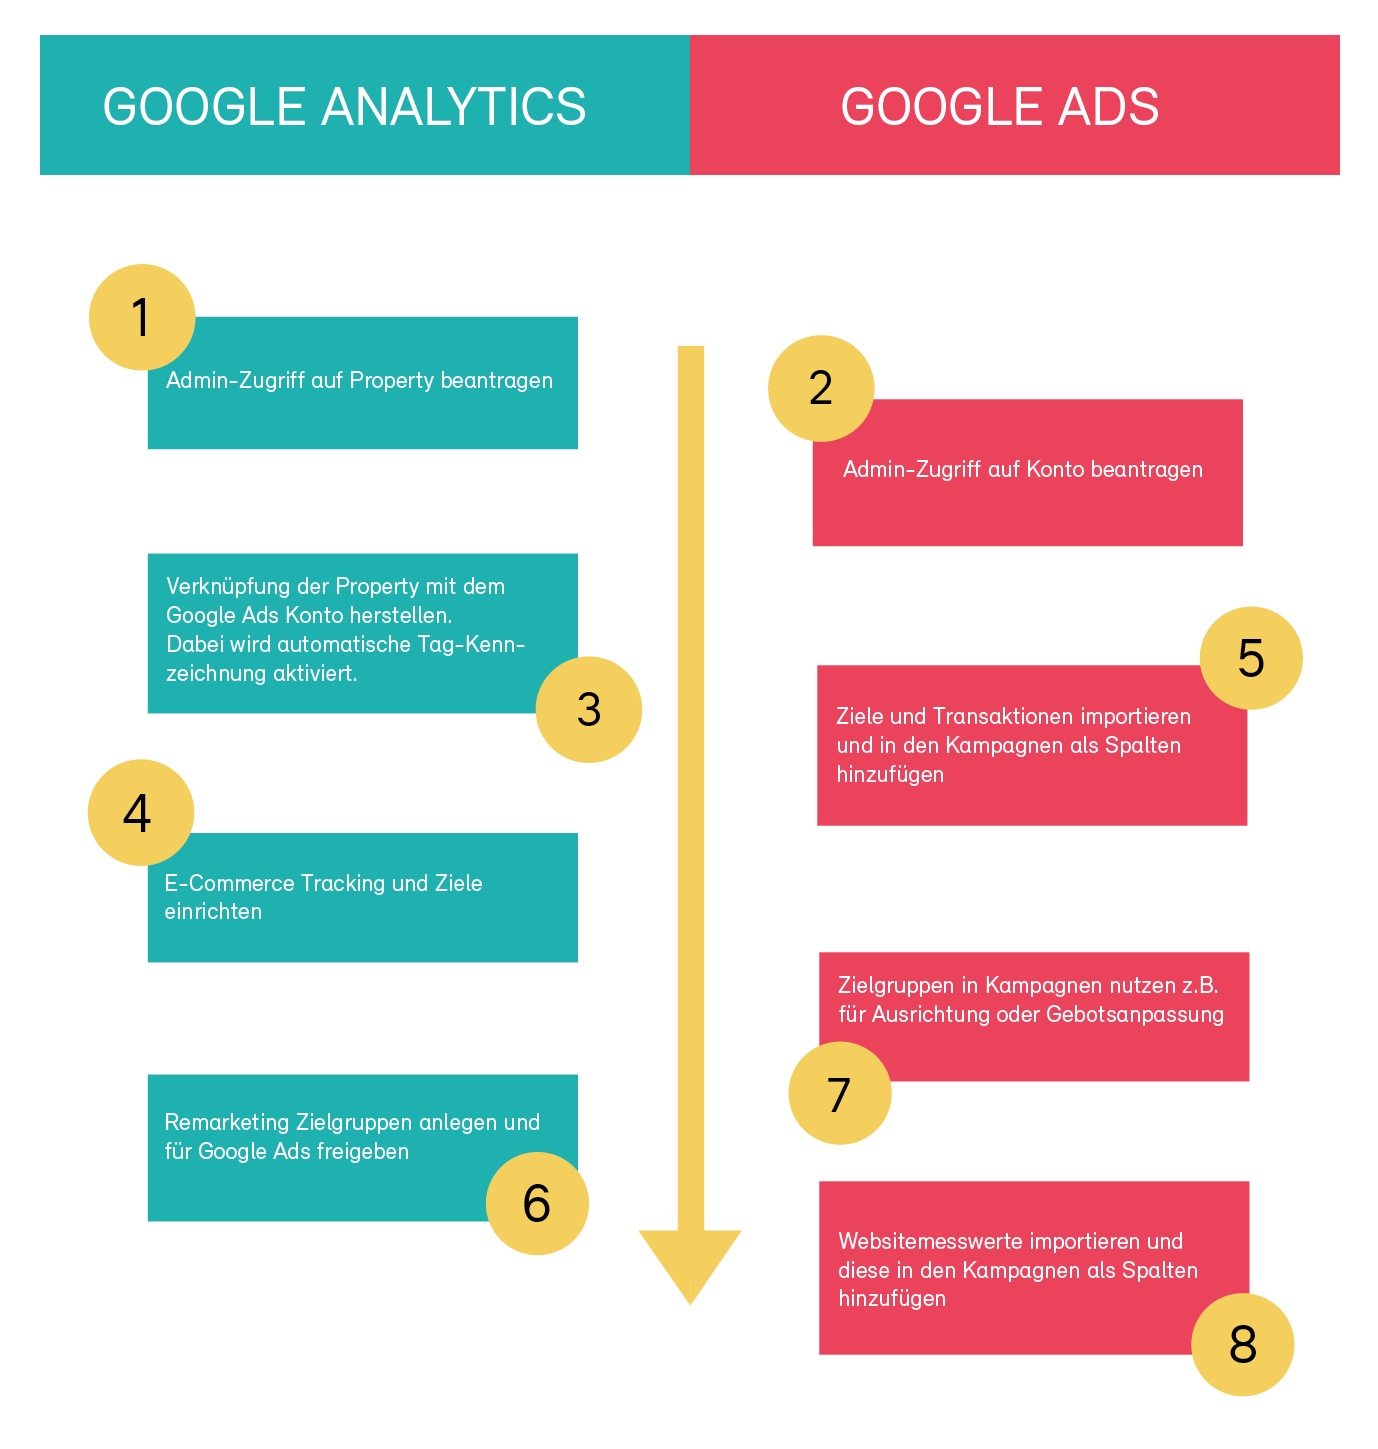 In 8 Schritten zur optimalen Verknüpfung von Analytics & Google Ads